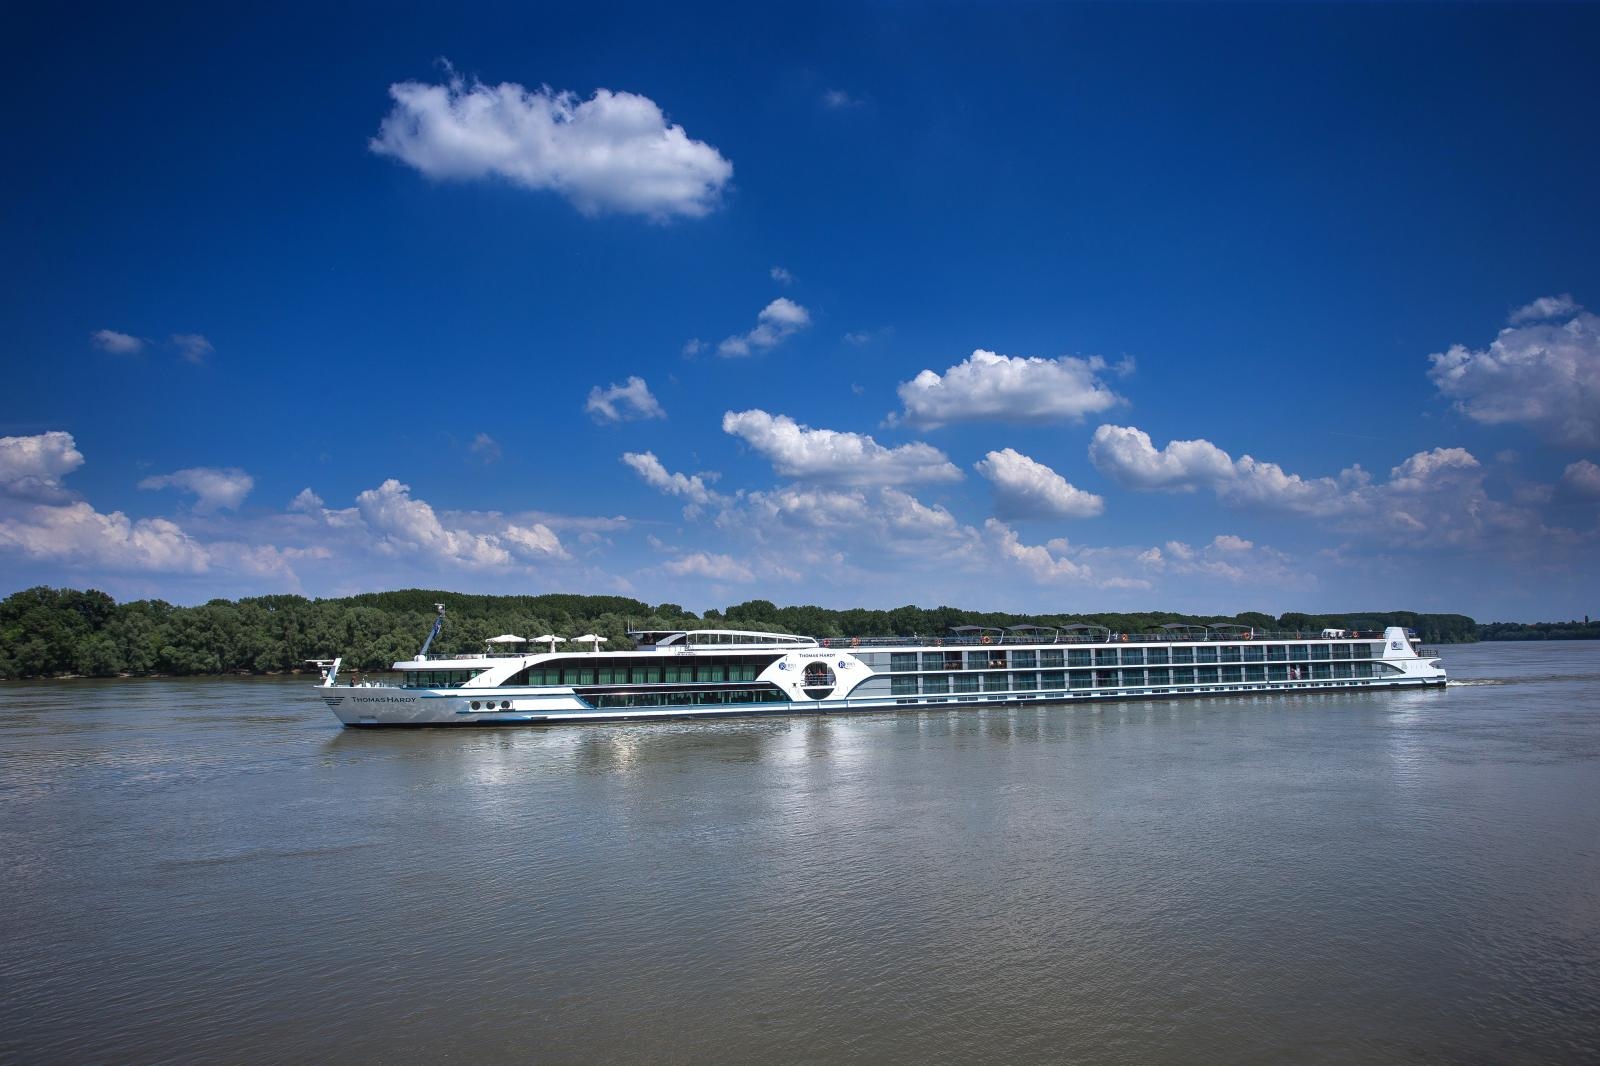 12.05.2018., Vukovar - Vukovar je jedno od pristanista na kojima staju kruzeri tijekom krstarenja po Dunavu. 
Kruzeri su pravi hoteli na Dunavu dostojni svojeg zadataka: krstarenja na rjecnoj vodi.  
Photo: 